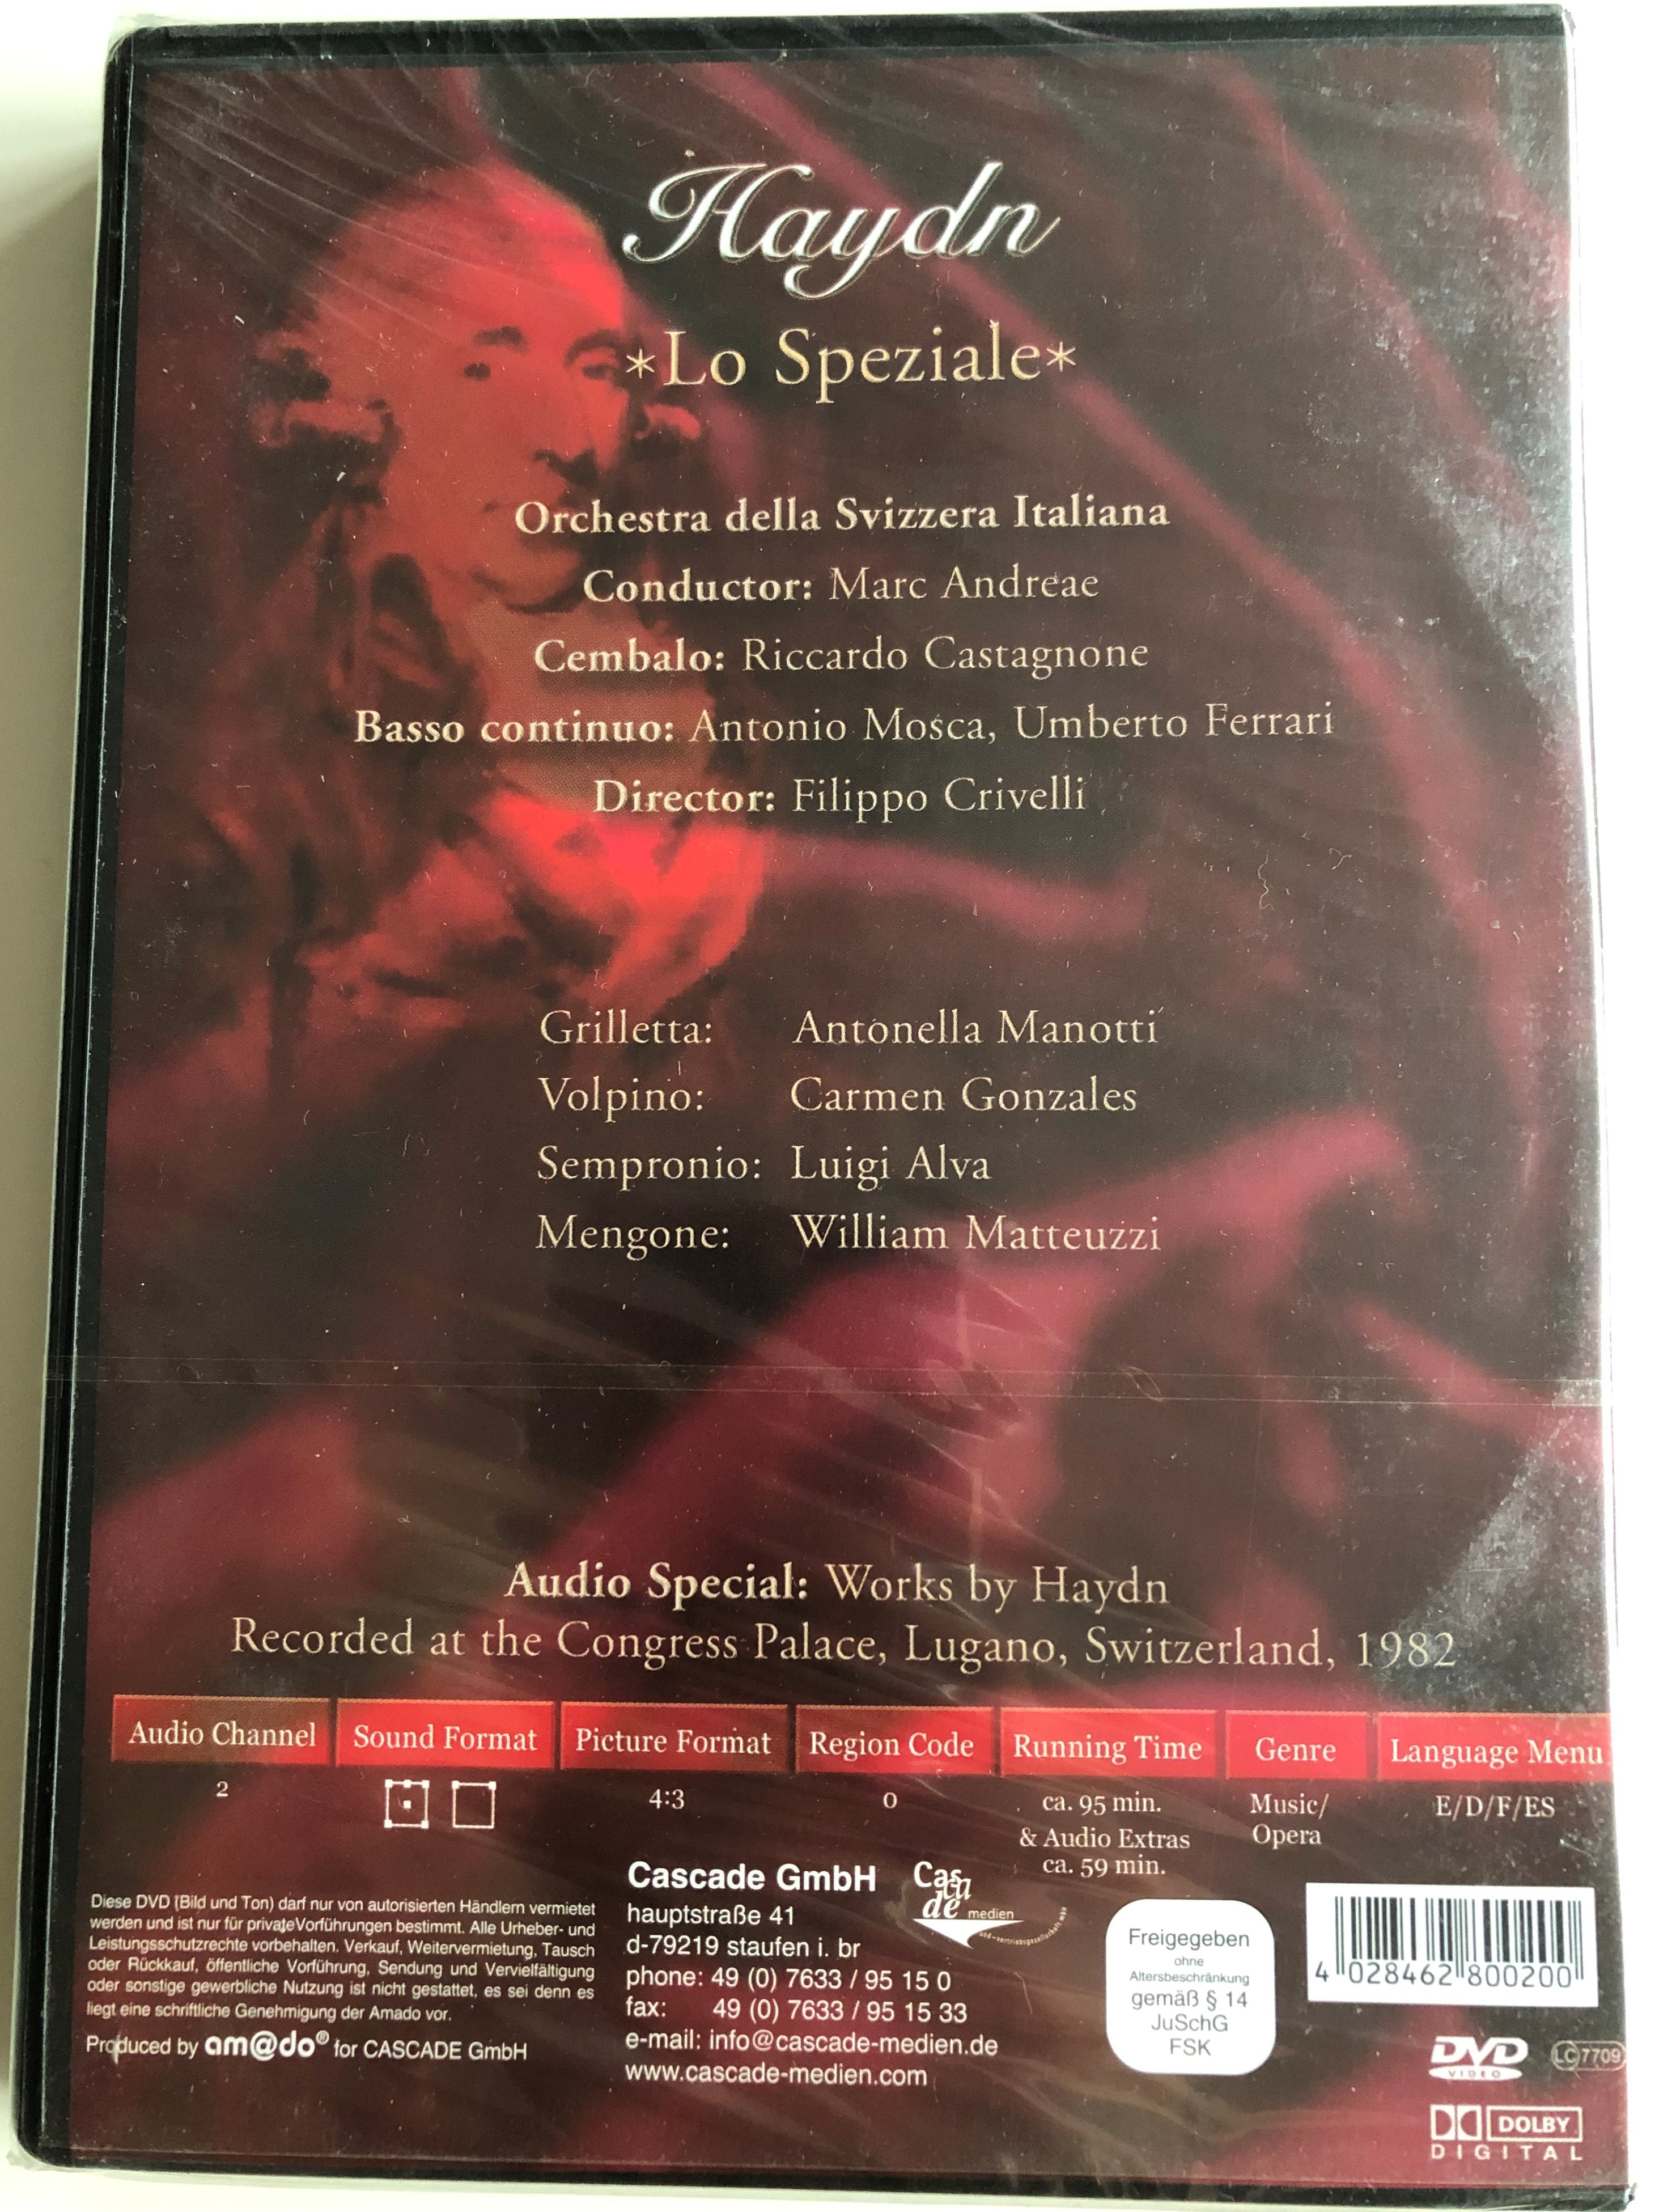 haydn-lo-speziale-comic-opera-in-3-acts-orchestra-della-svizzera-italiana-marc-andreae-antonella-manotti-carmen-gonzales-luigi-alva-william-matteuzzi-silverline-classics-cascade-medie.jpg